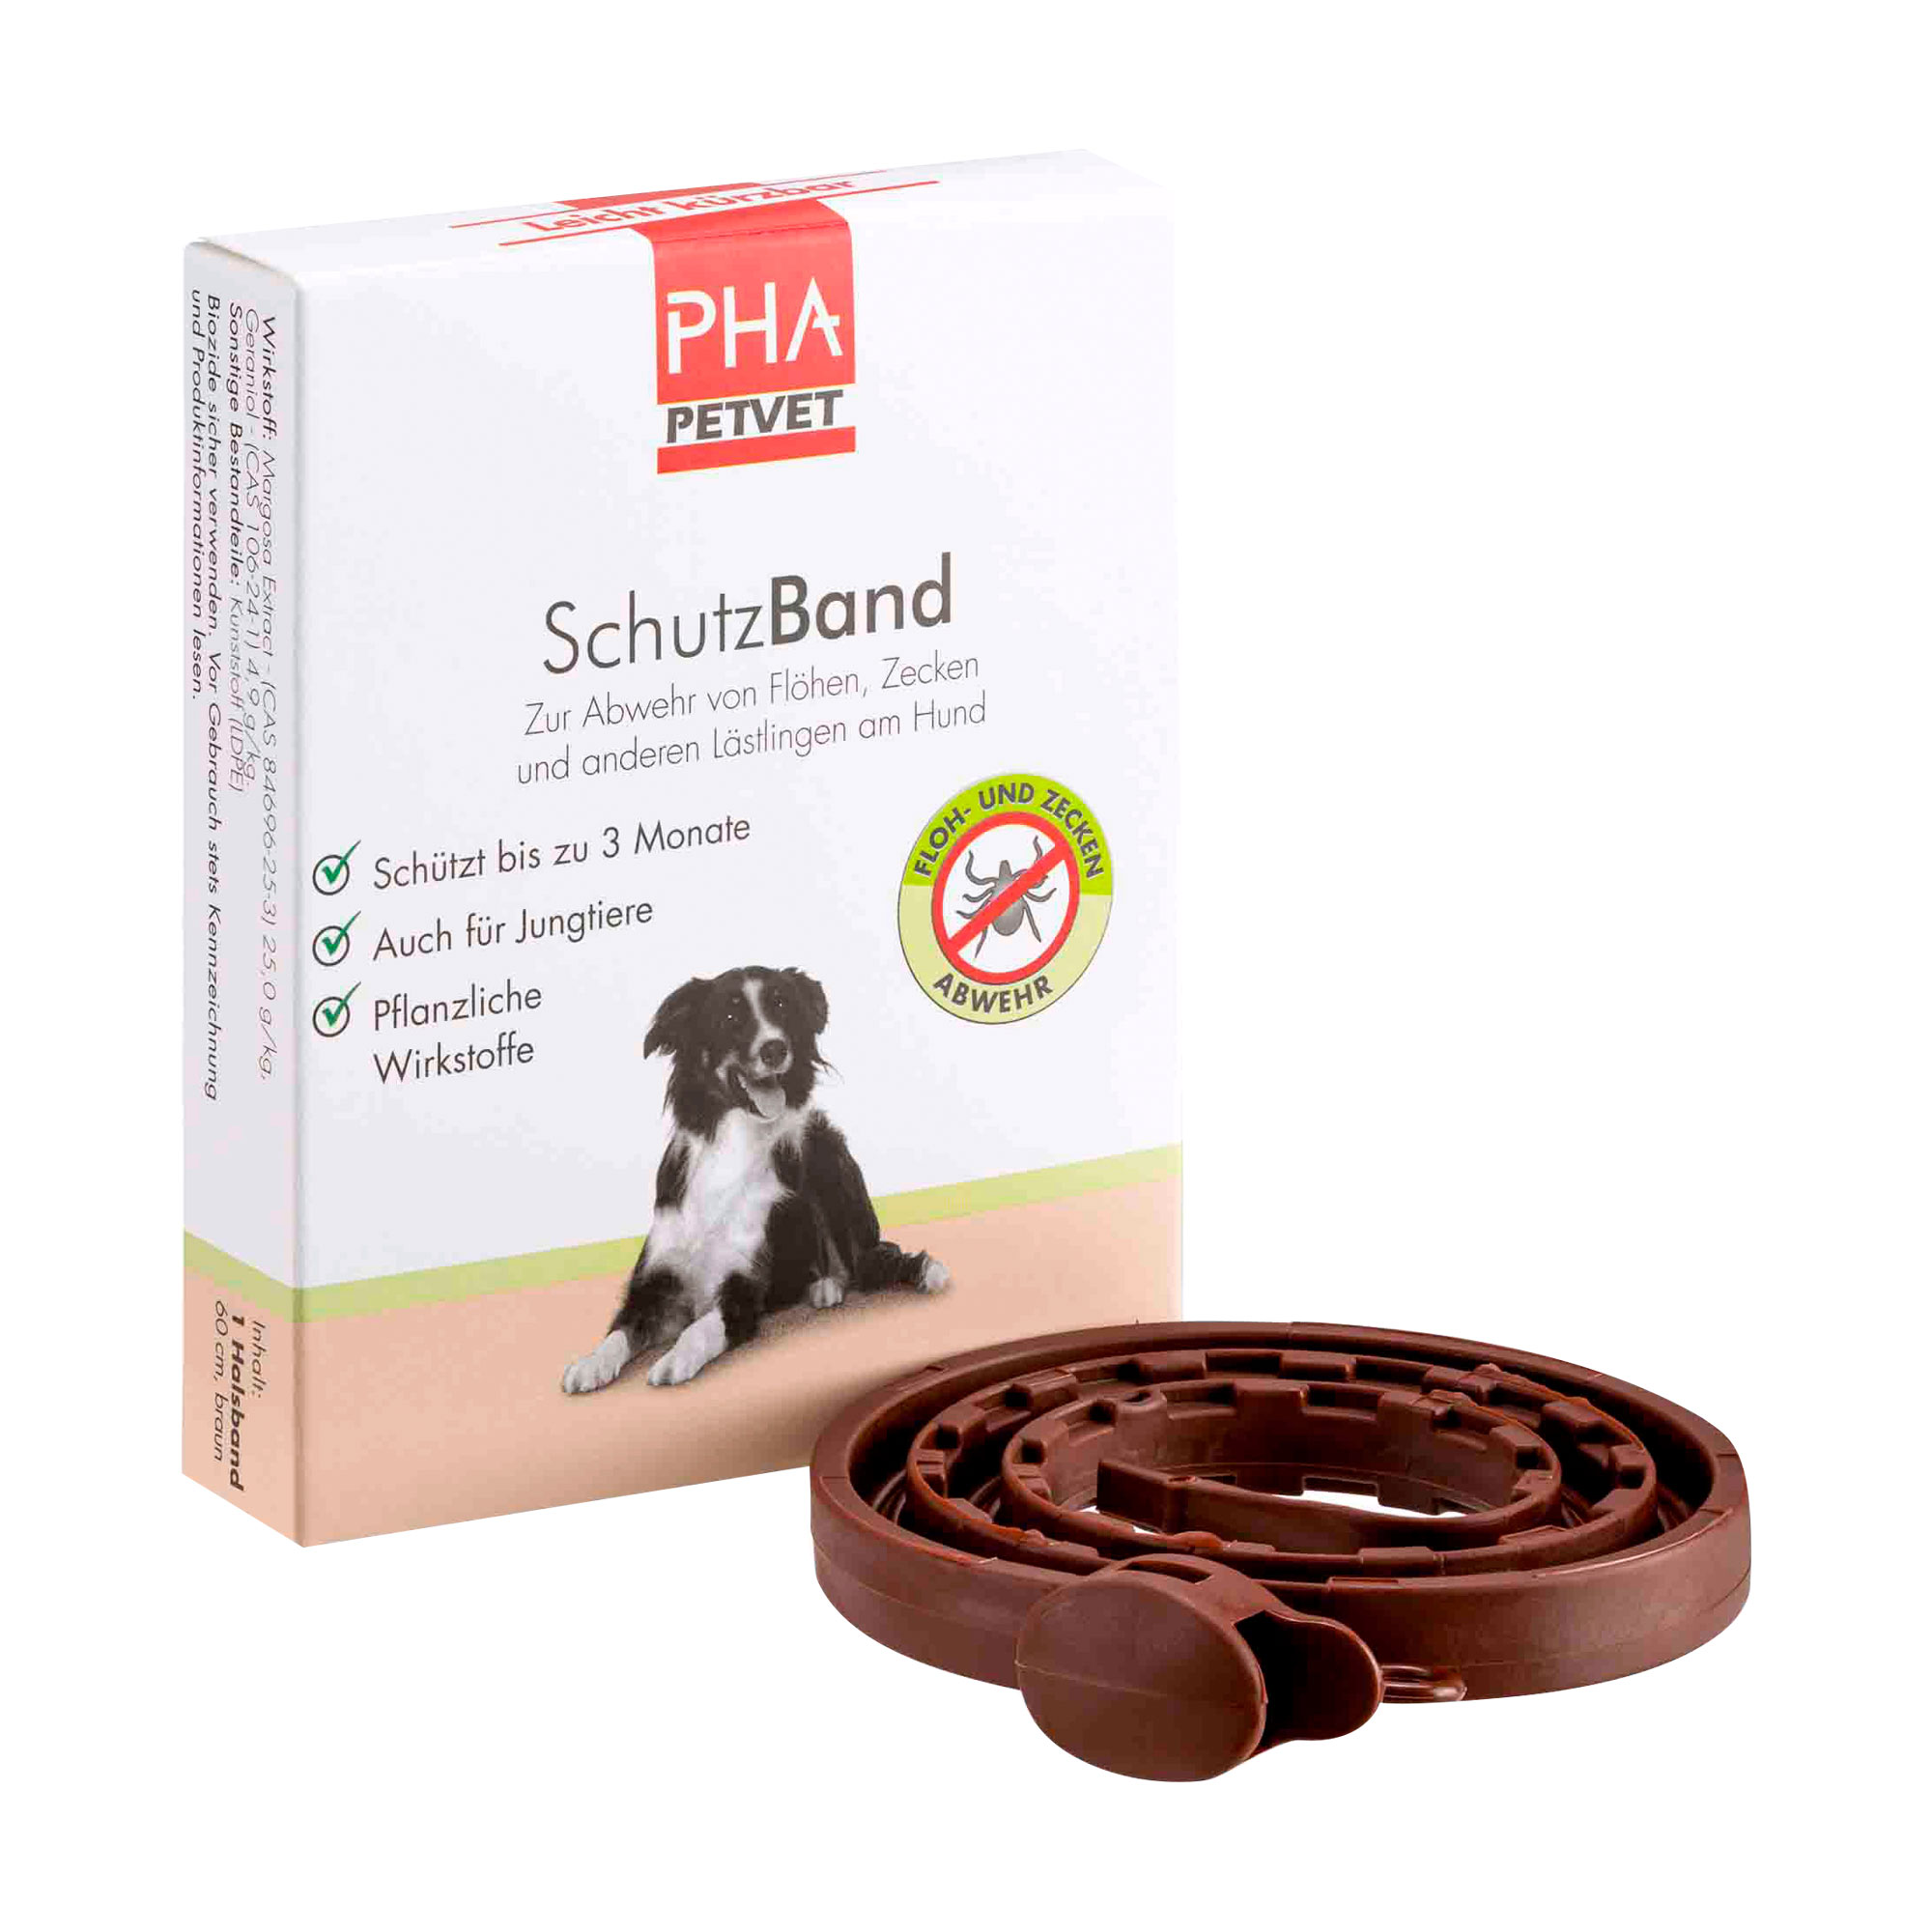 Kunststoffhalsband (60 cm) für Hunde zur Abwehr von Flöhen, Zecken und anderen Lästlingen.